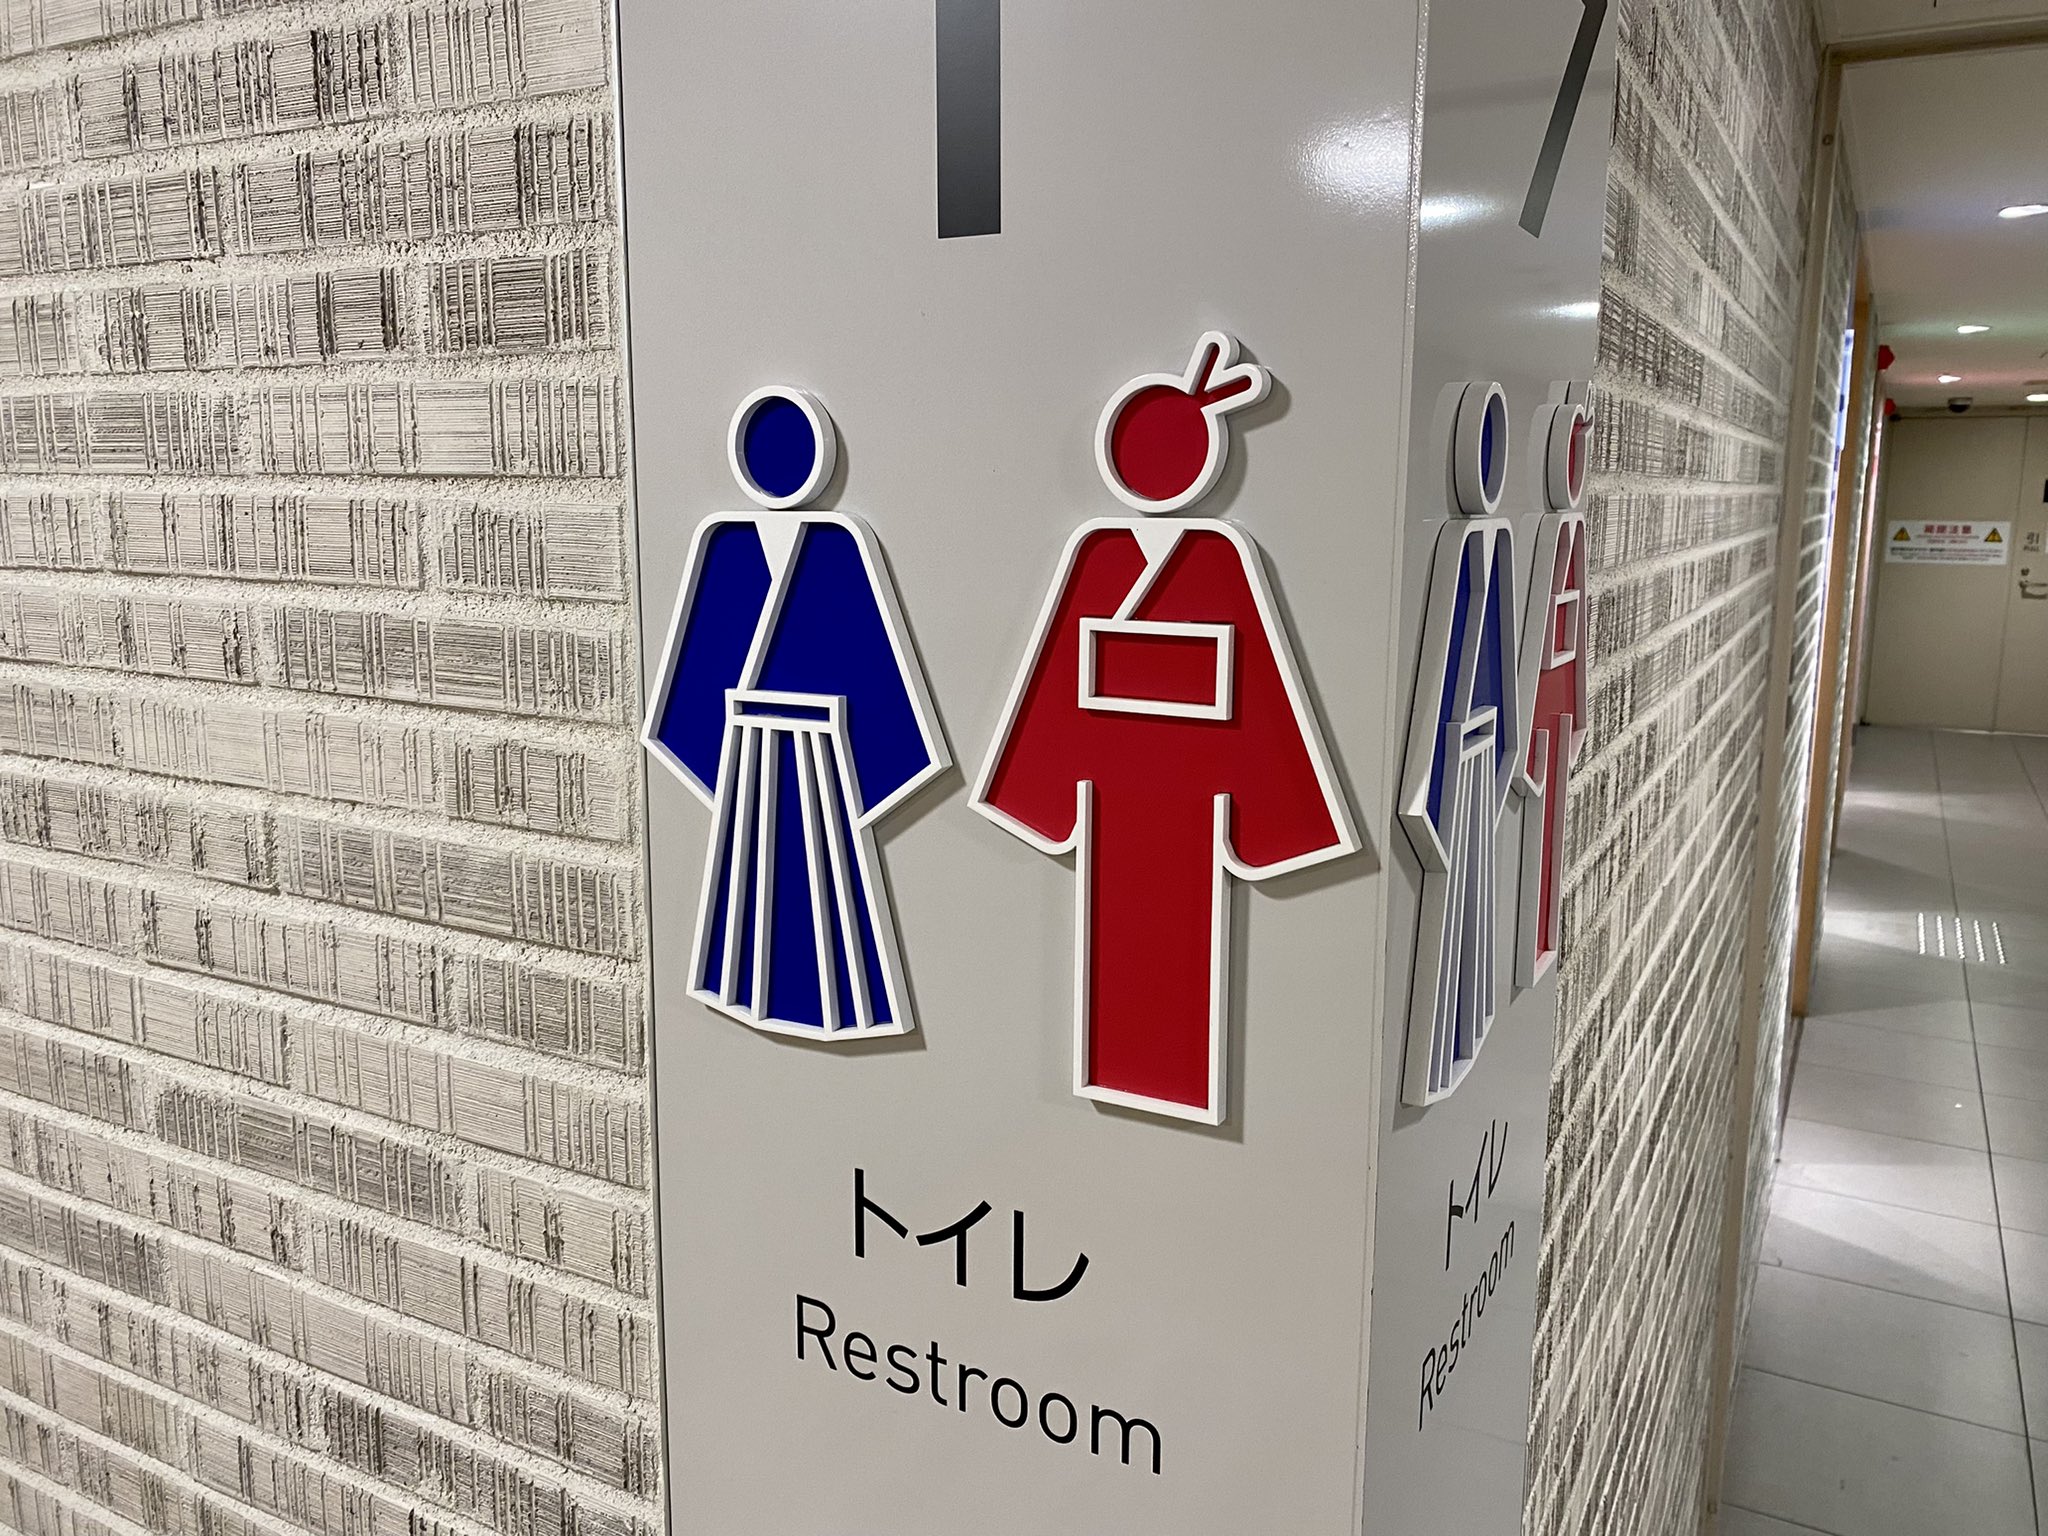 Hirotaka ね 京都駅のトイレのピクトグラムなんだけど めっちゃ素敵すぎん これ見たとき 京都へ着いたんだなぁ って実感したし 外国から来た人ならちょっと感動すると思う こういうご当地ピクトグラム もっと増えていくといいのに T